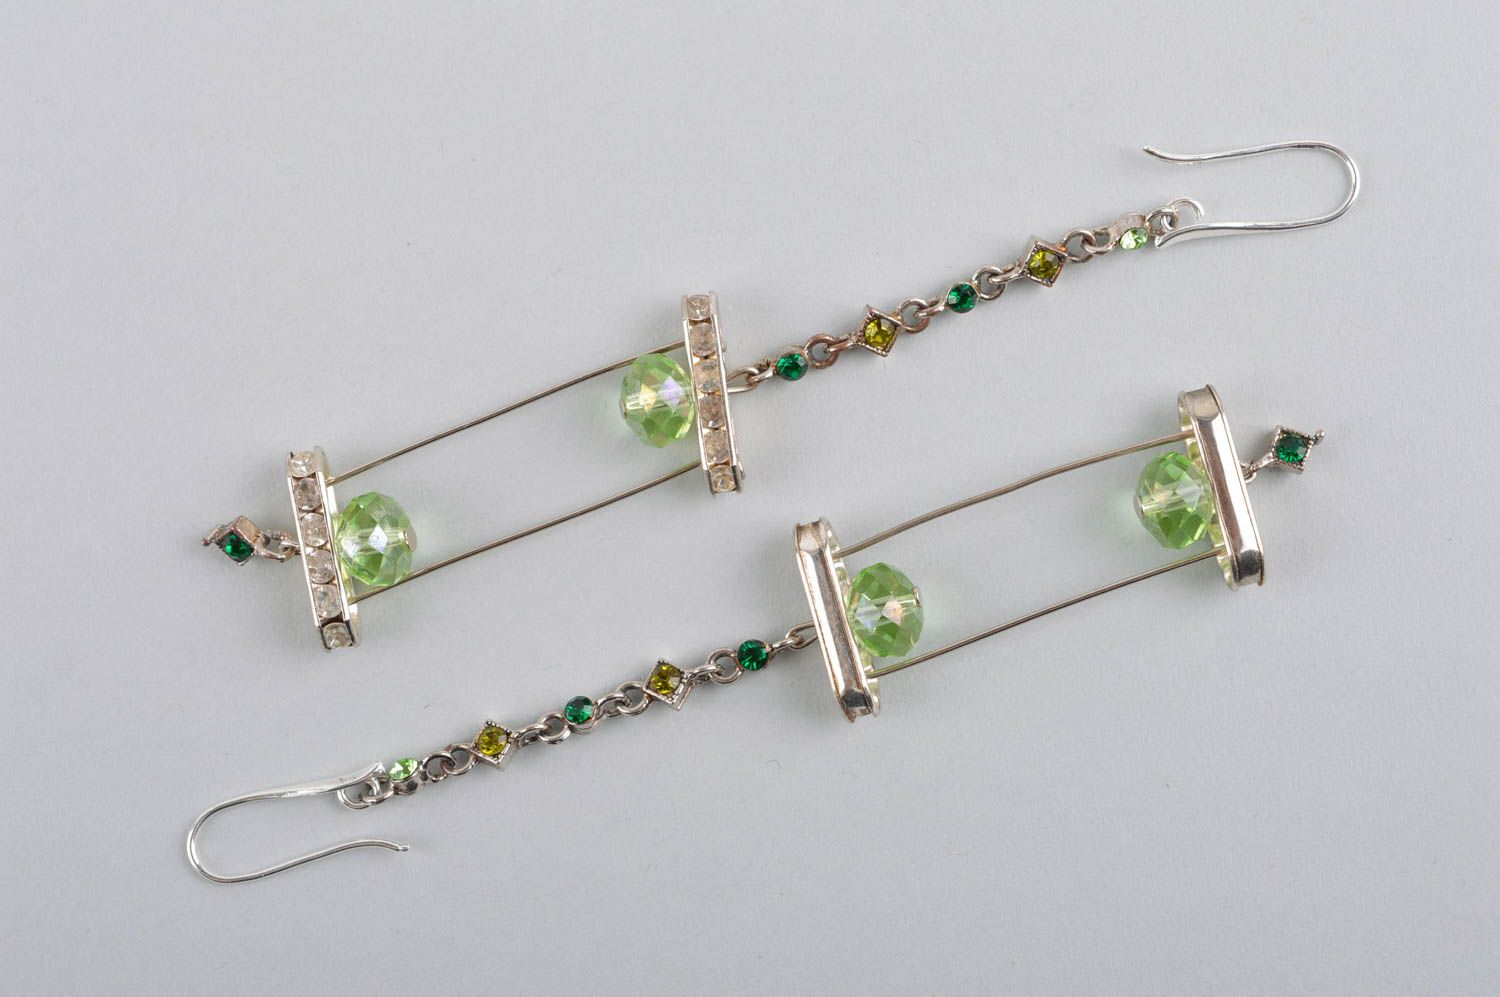 Handmade earrings fashion jewelry dangling earrings best gifts for women photo 5